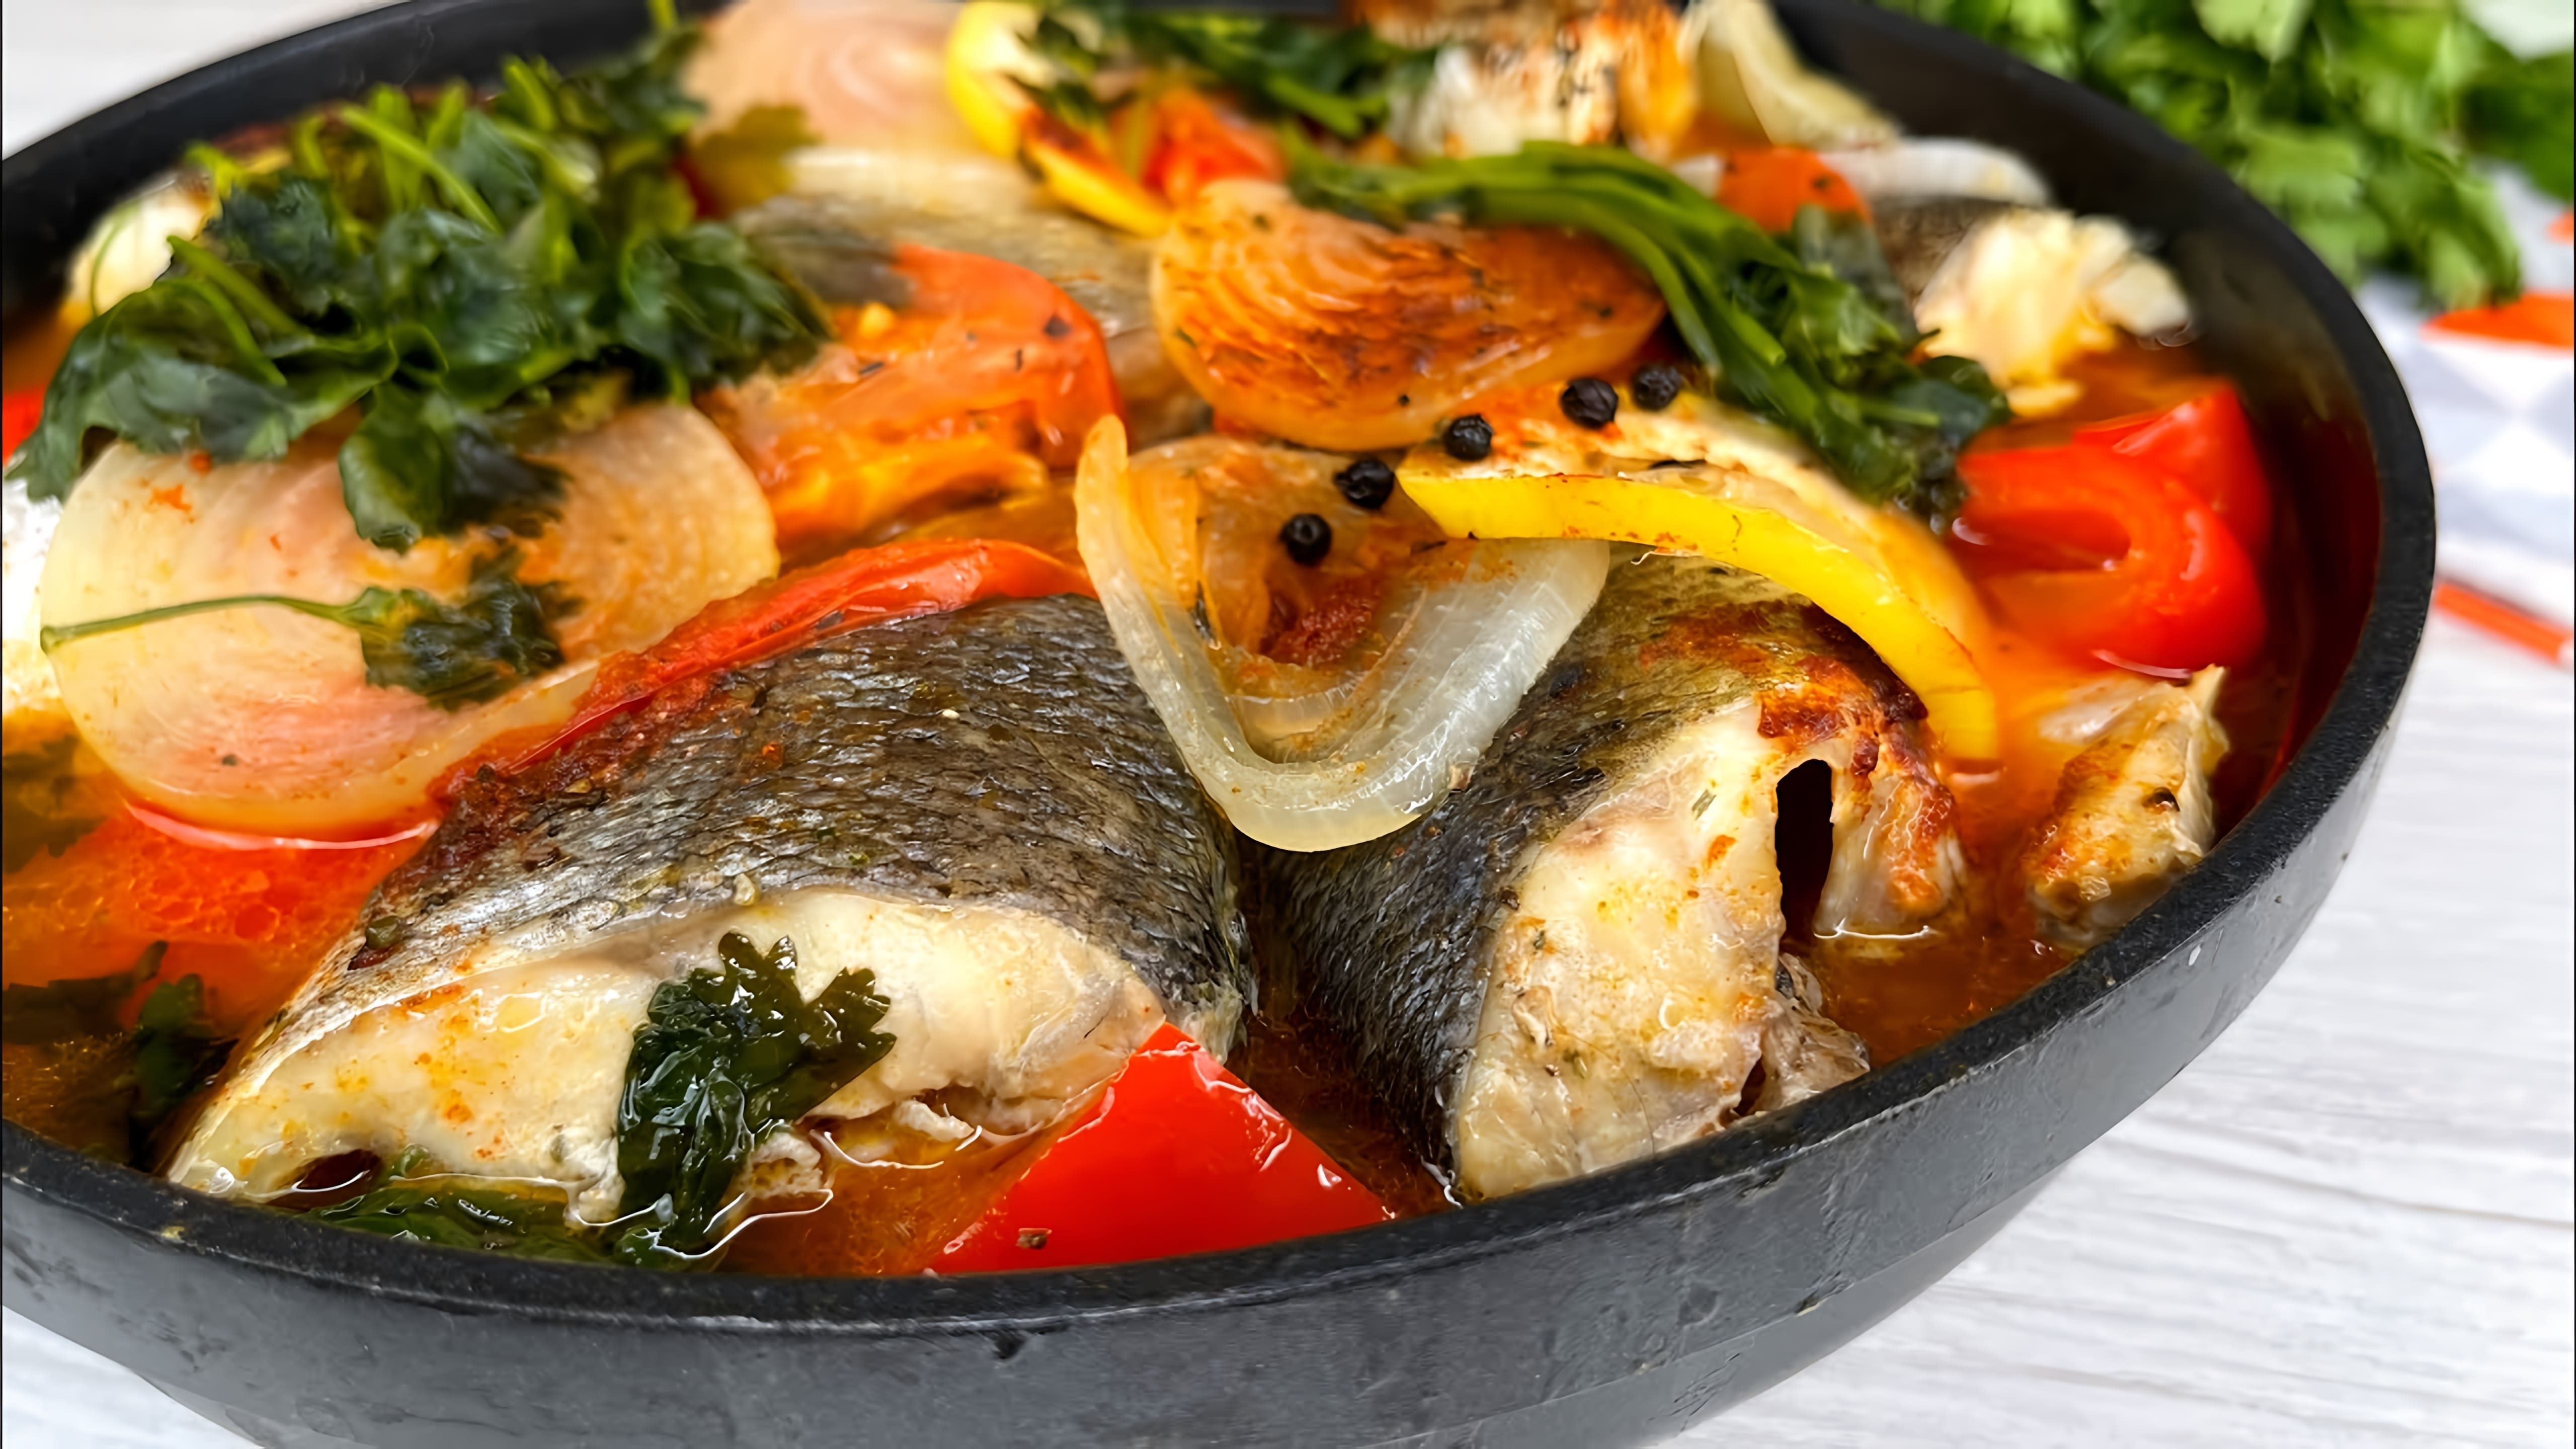 В этом видео демонстрируется простой и быстрый способ приготовления вкусного рыбного блюда